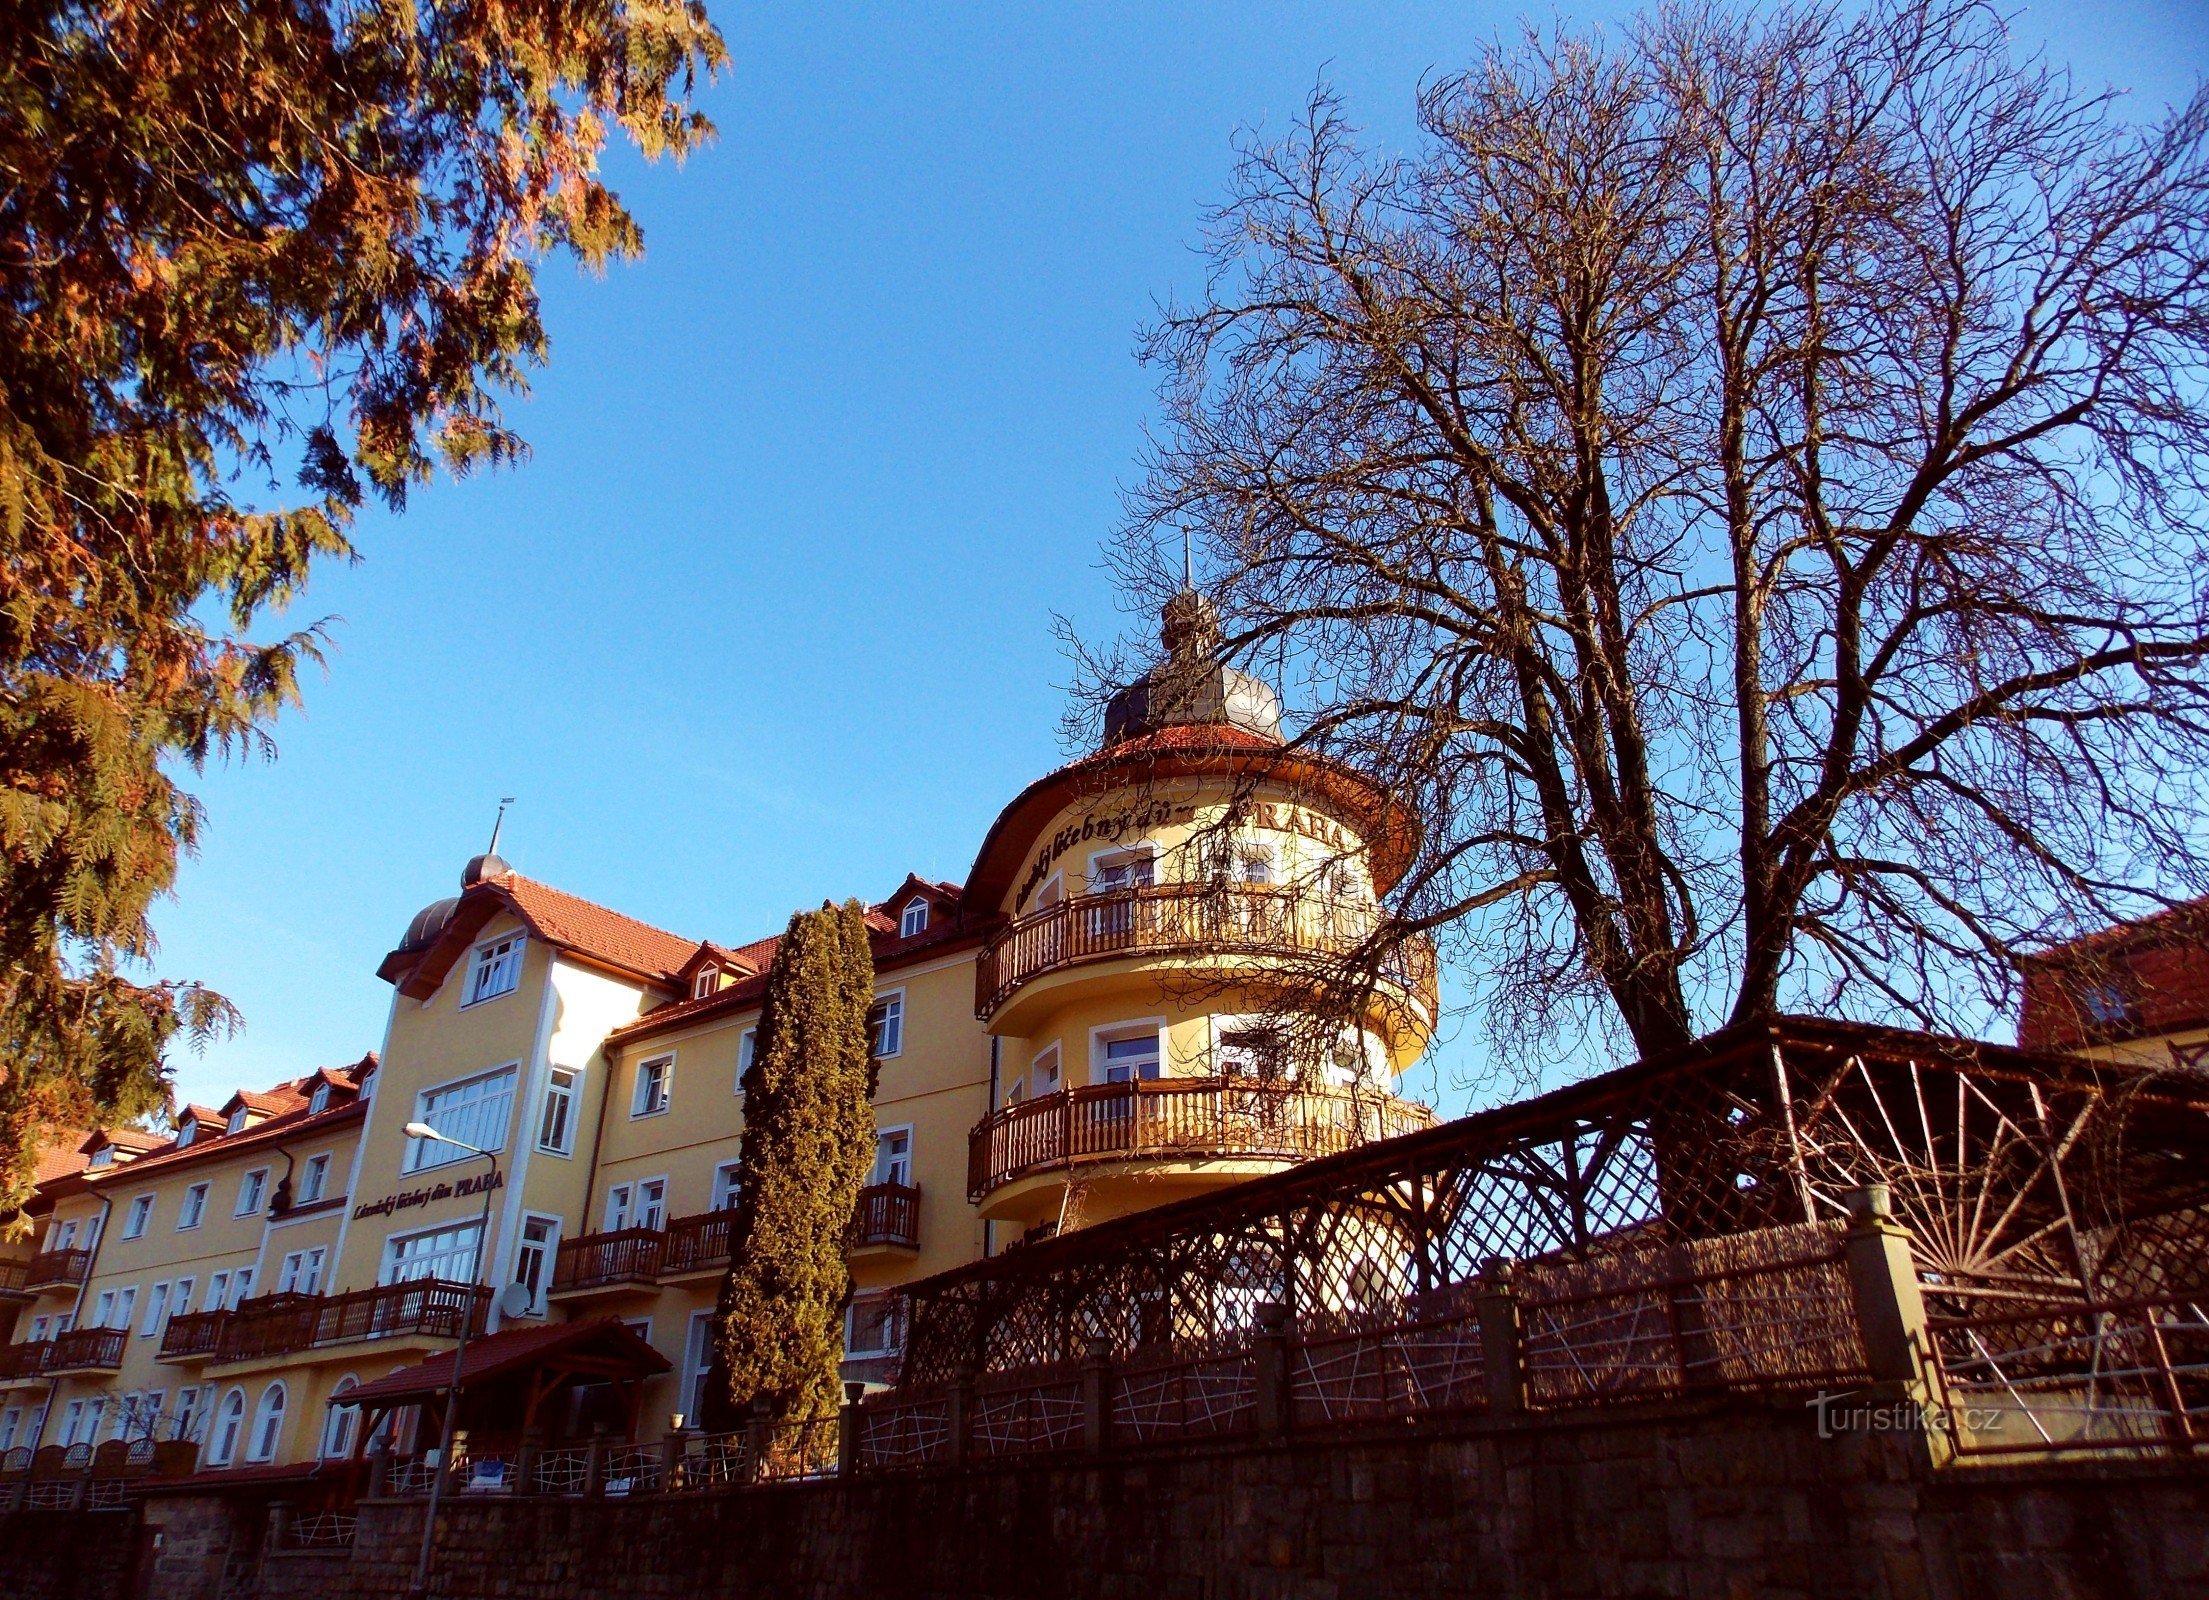 Διαμονή στο Spa και Θεραπεία της Πράγας στο Luhačovice